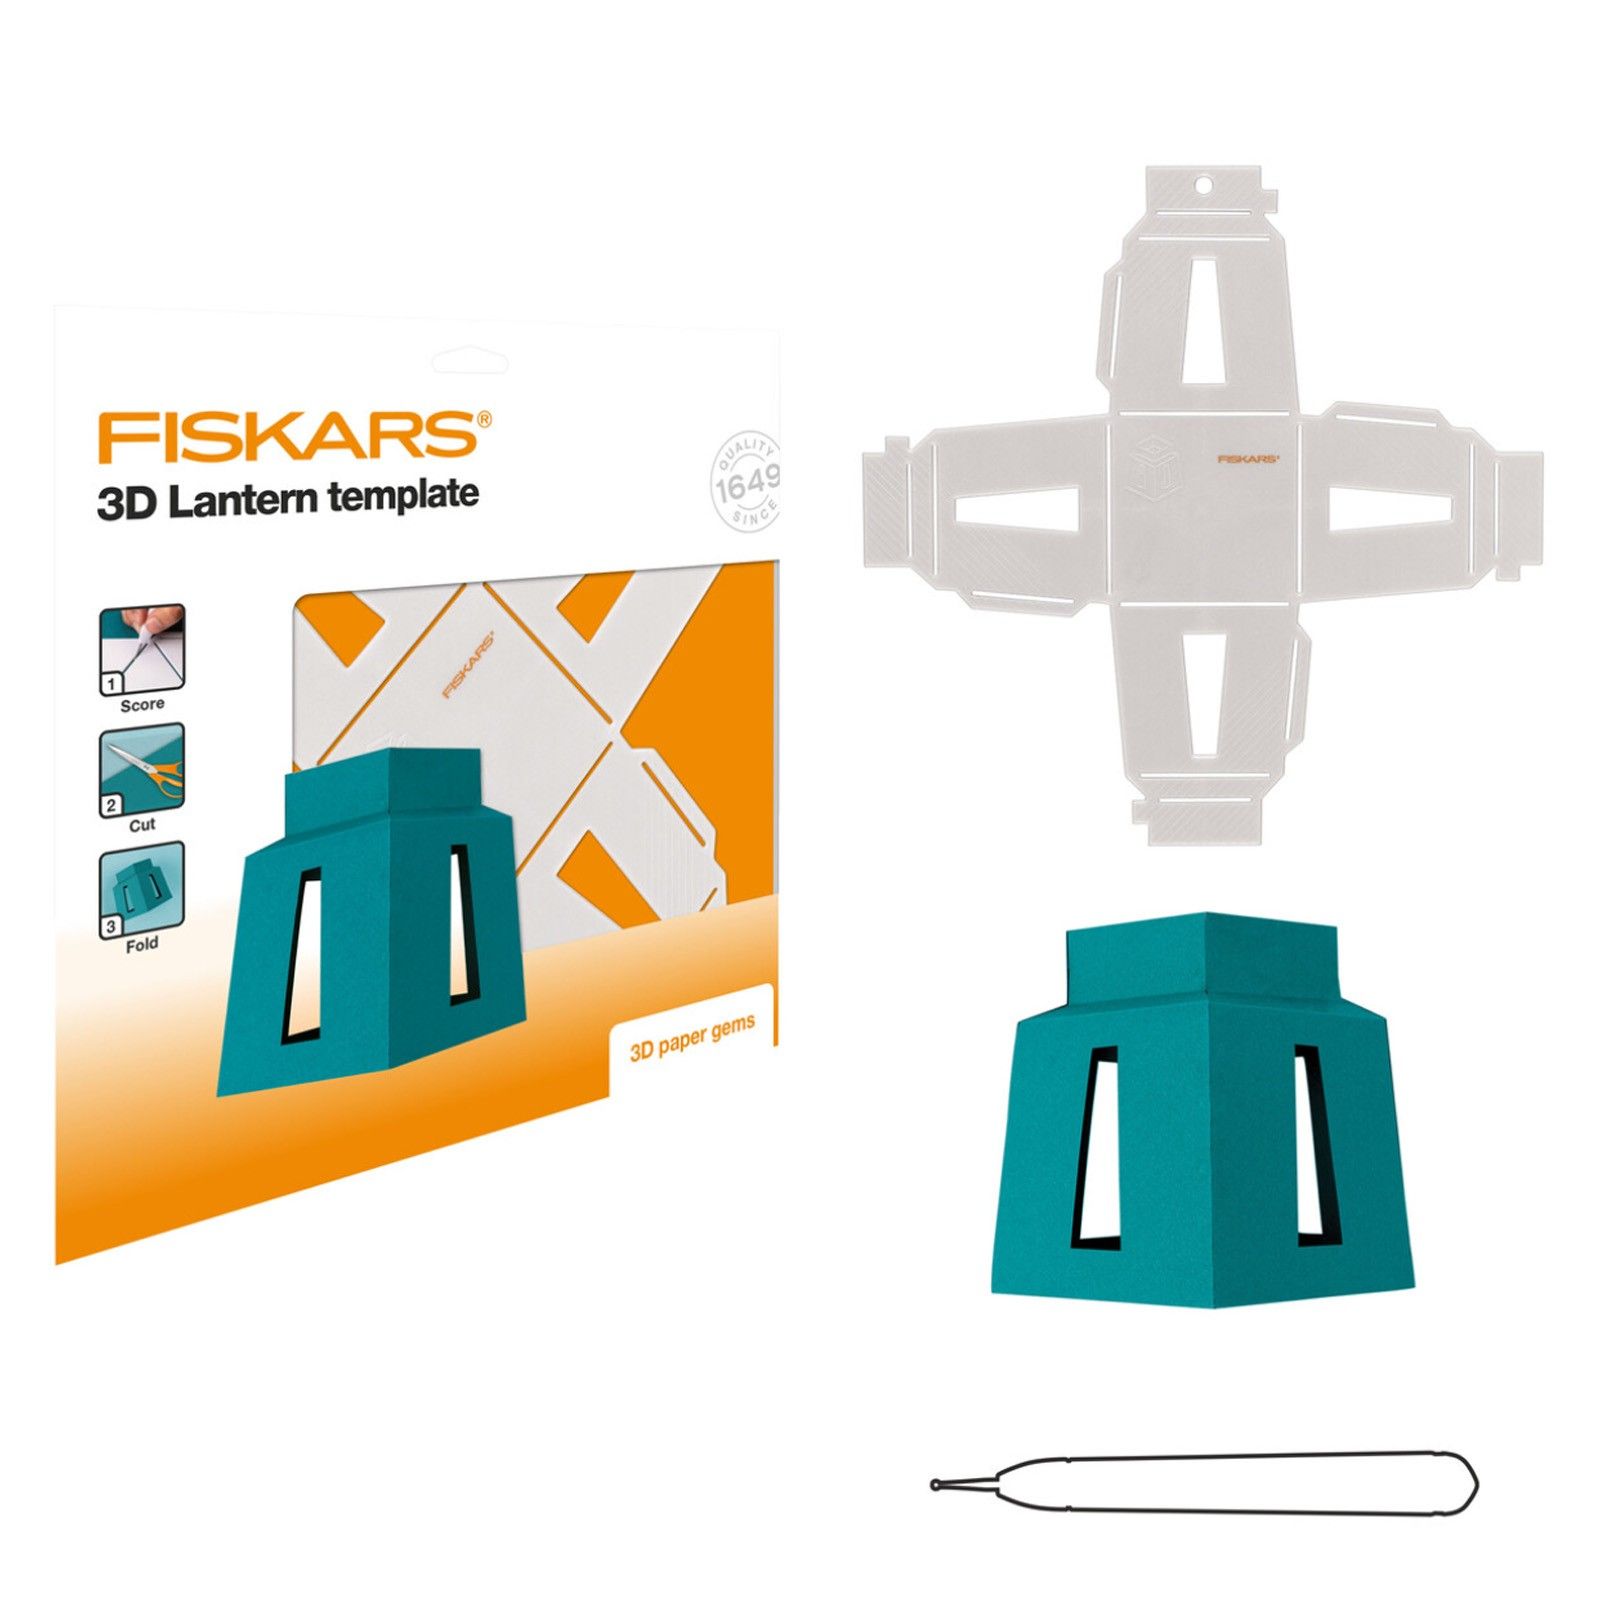 Fiskars • 3D Paper Gems Lantern Template